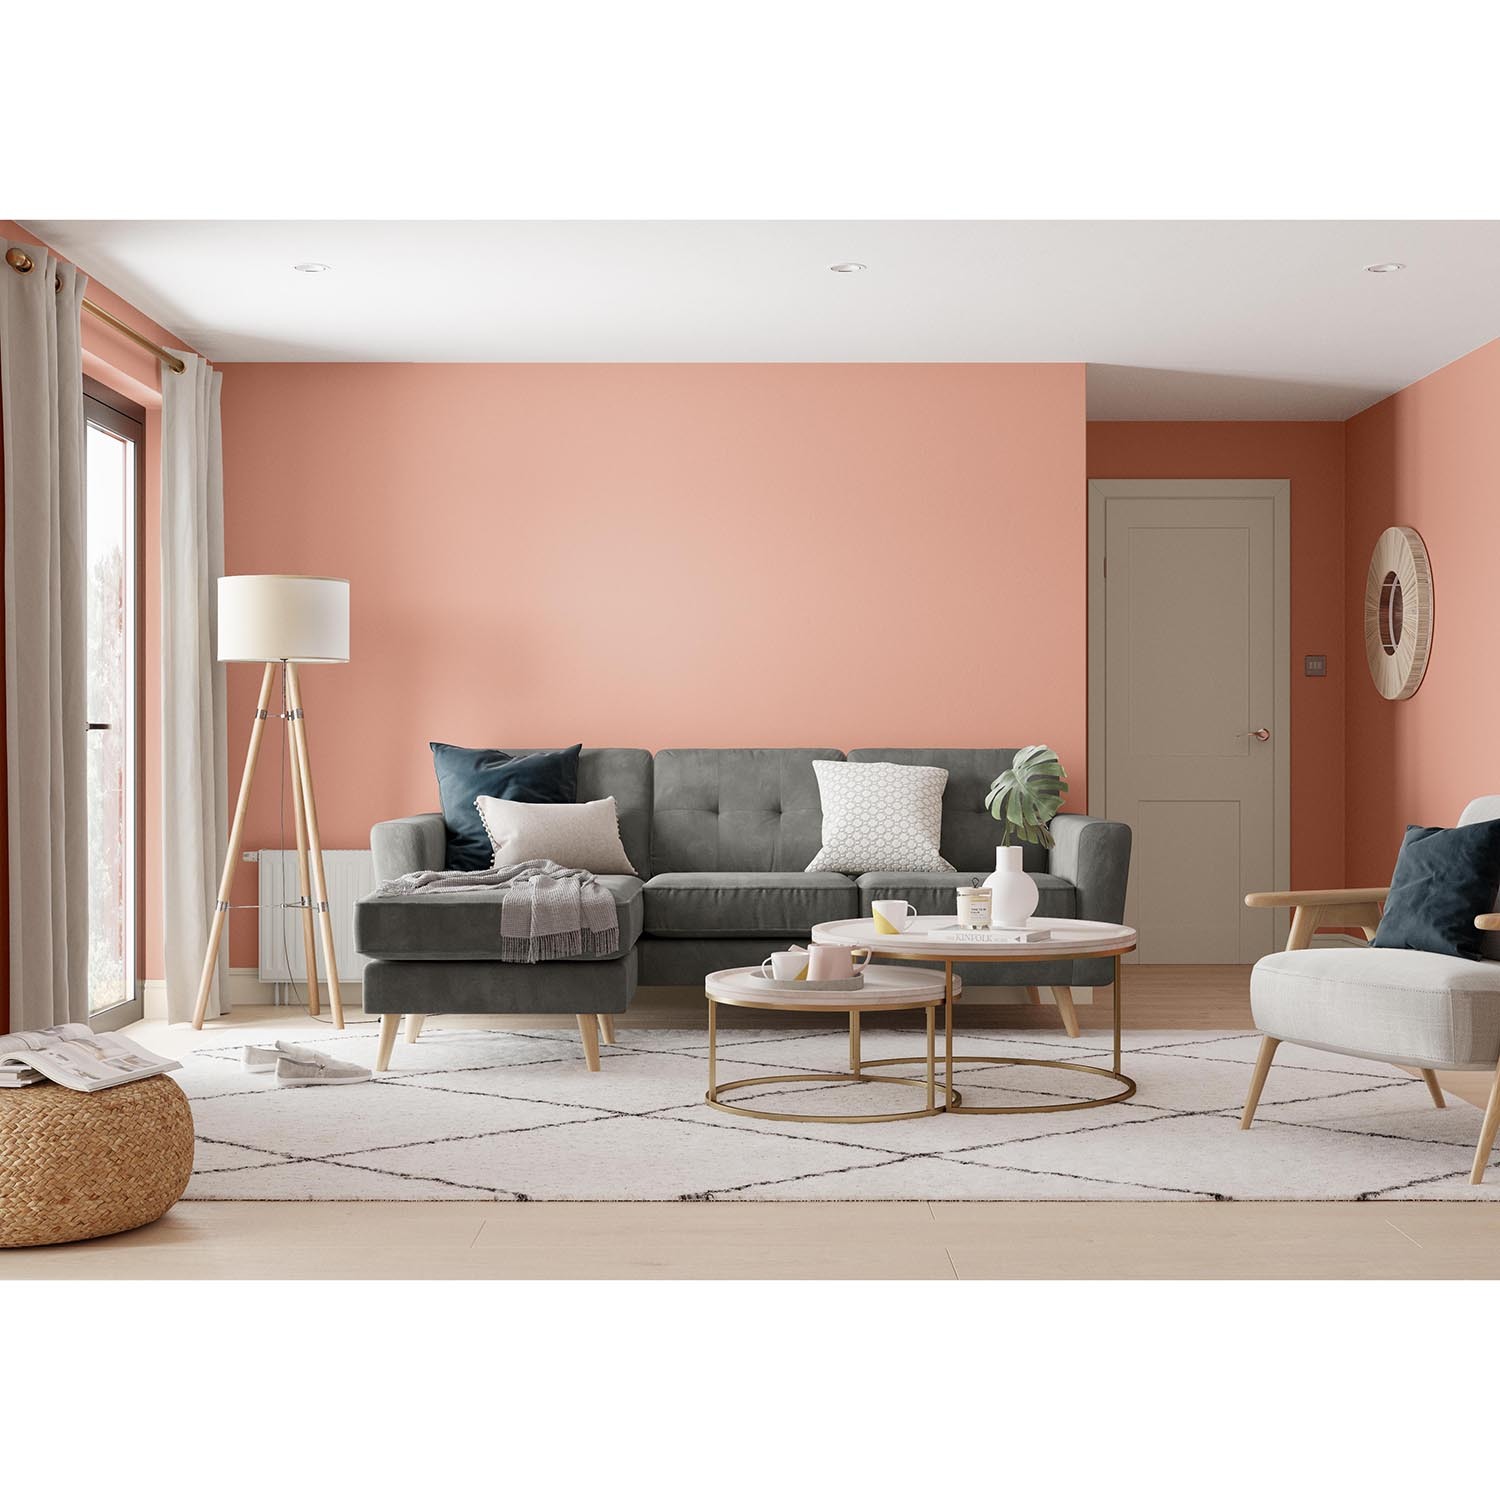 Dulux Walls & Ceilings Copper Blush Matt Emulsion Paint 2.5L Image 4